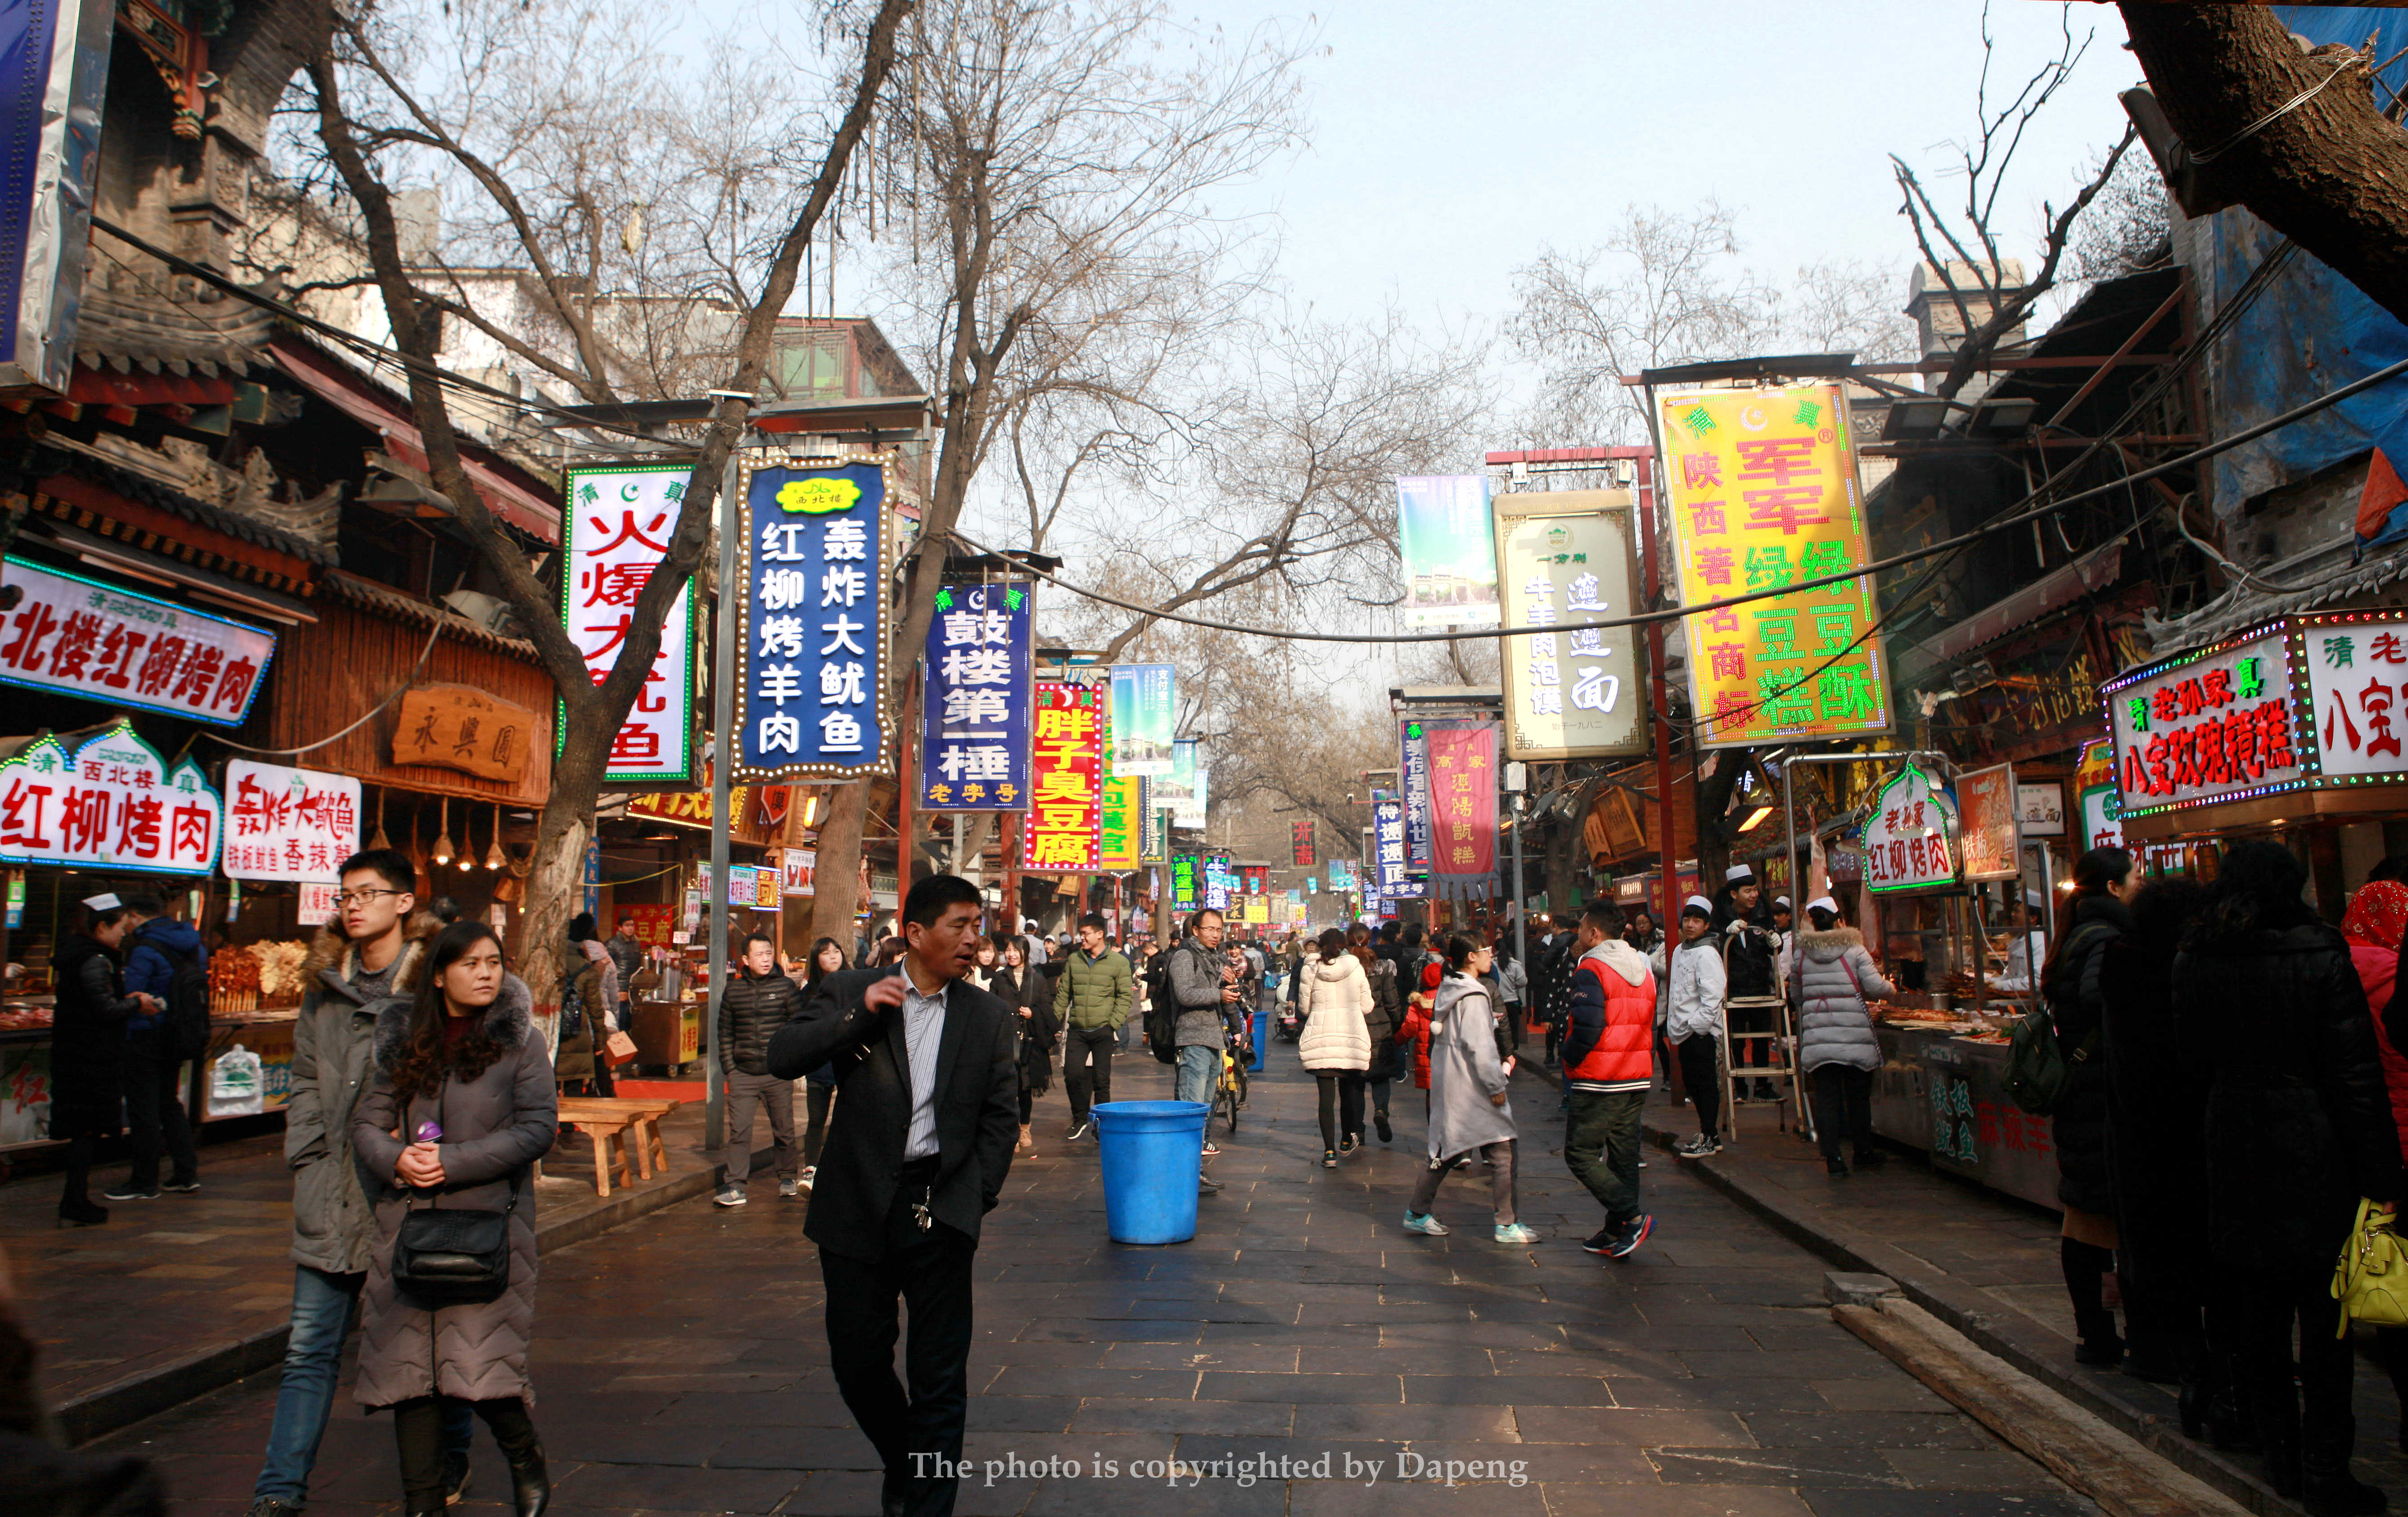 被称为中国十大美食街的回民街,曾经人山人海,而现在人咋这么少